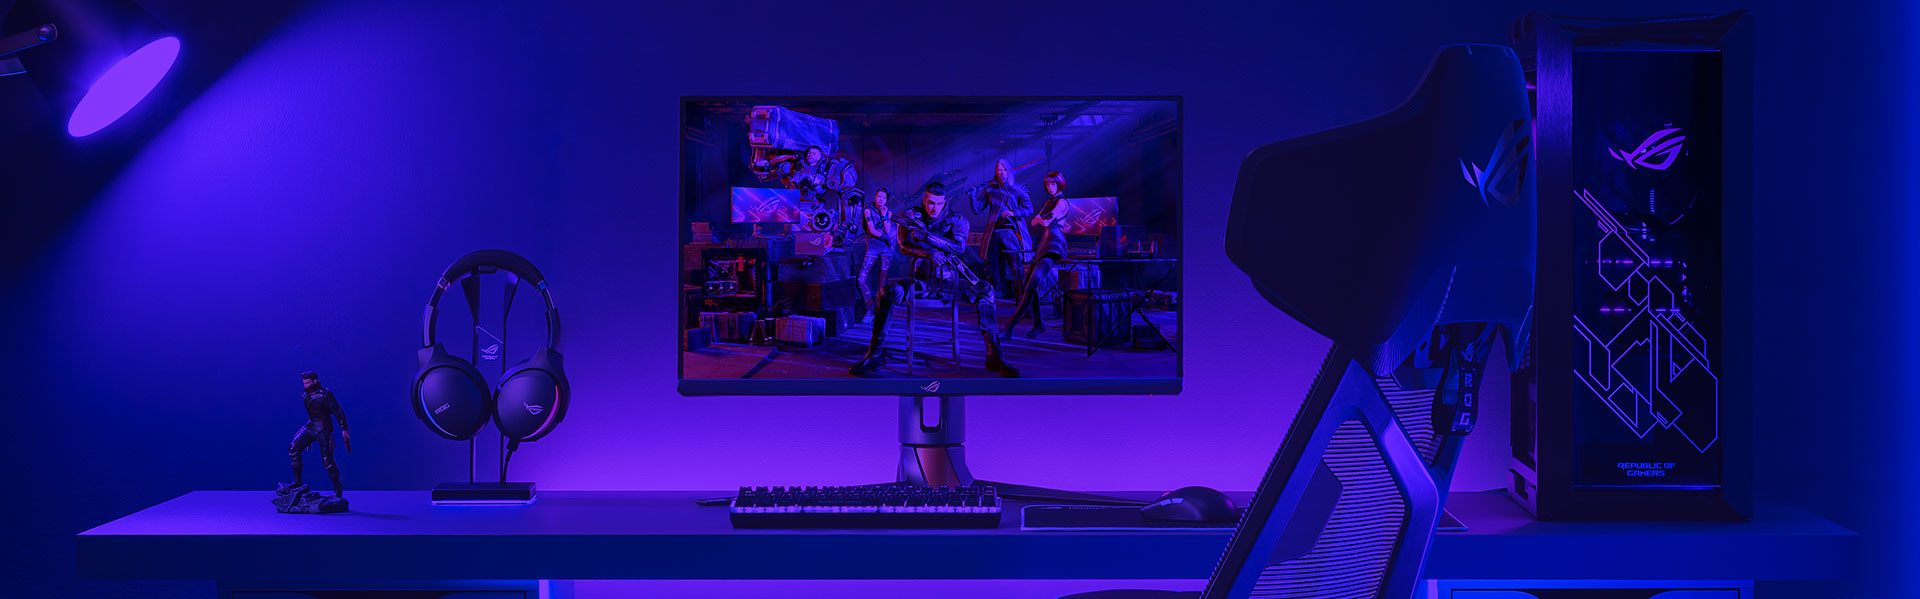 ROG-Gaming-Setup mit PC, Monitor, Tastatur und Maus sowie einem Headset